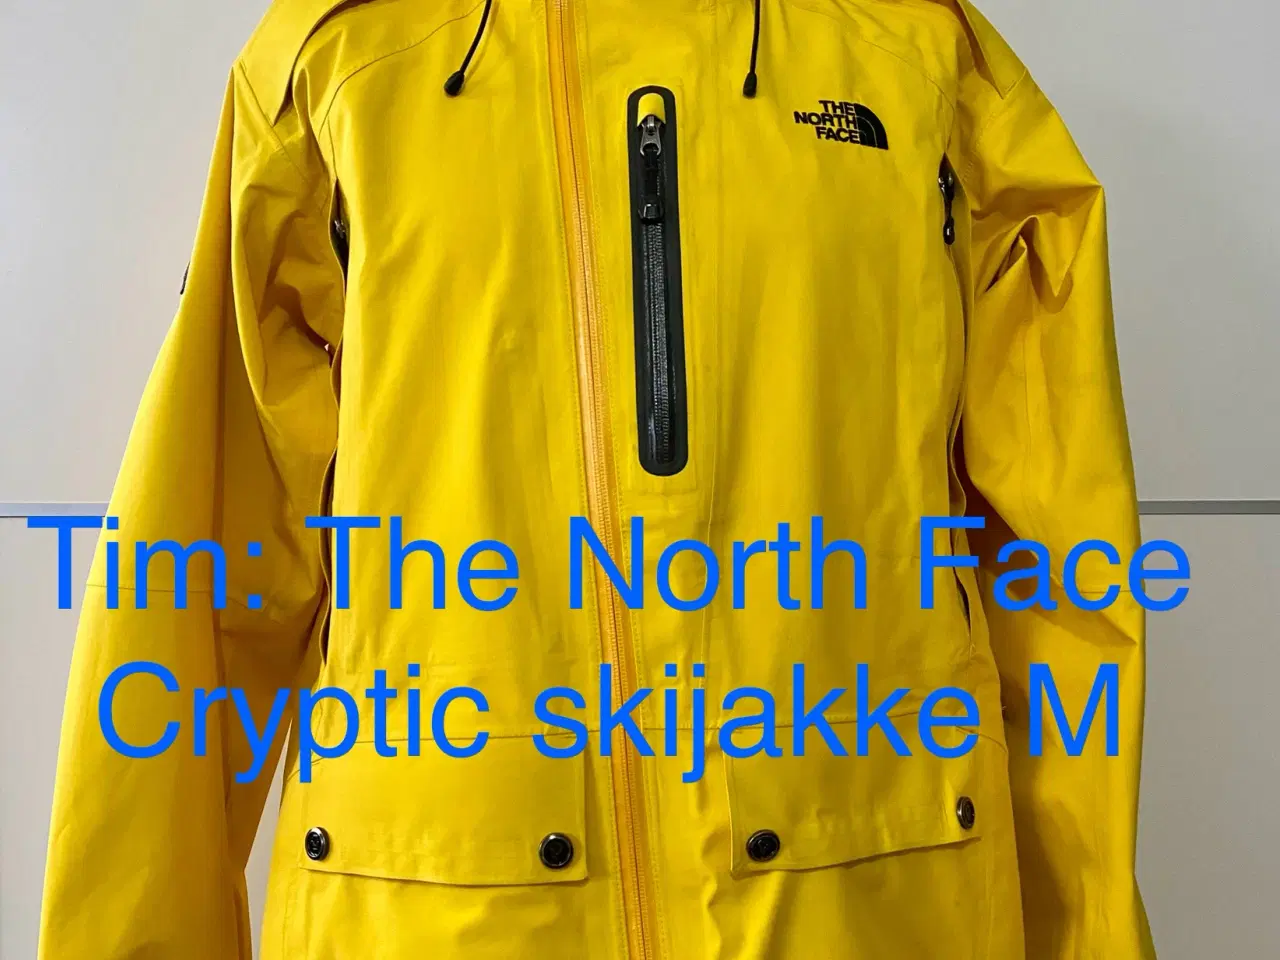 Billede 1 - The North Face Cryptic skijakke M 